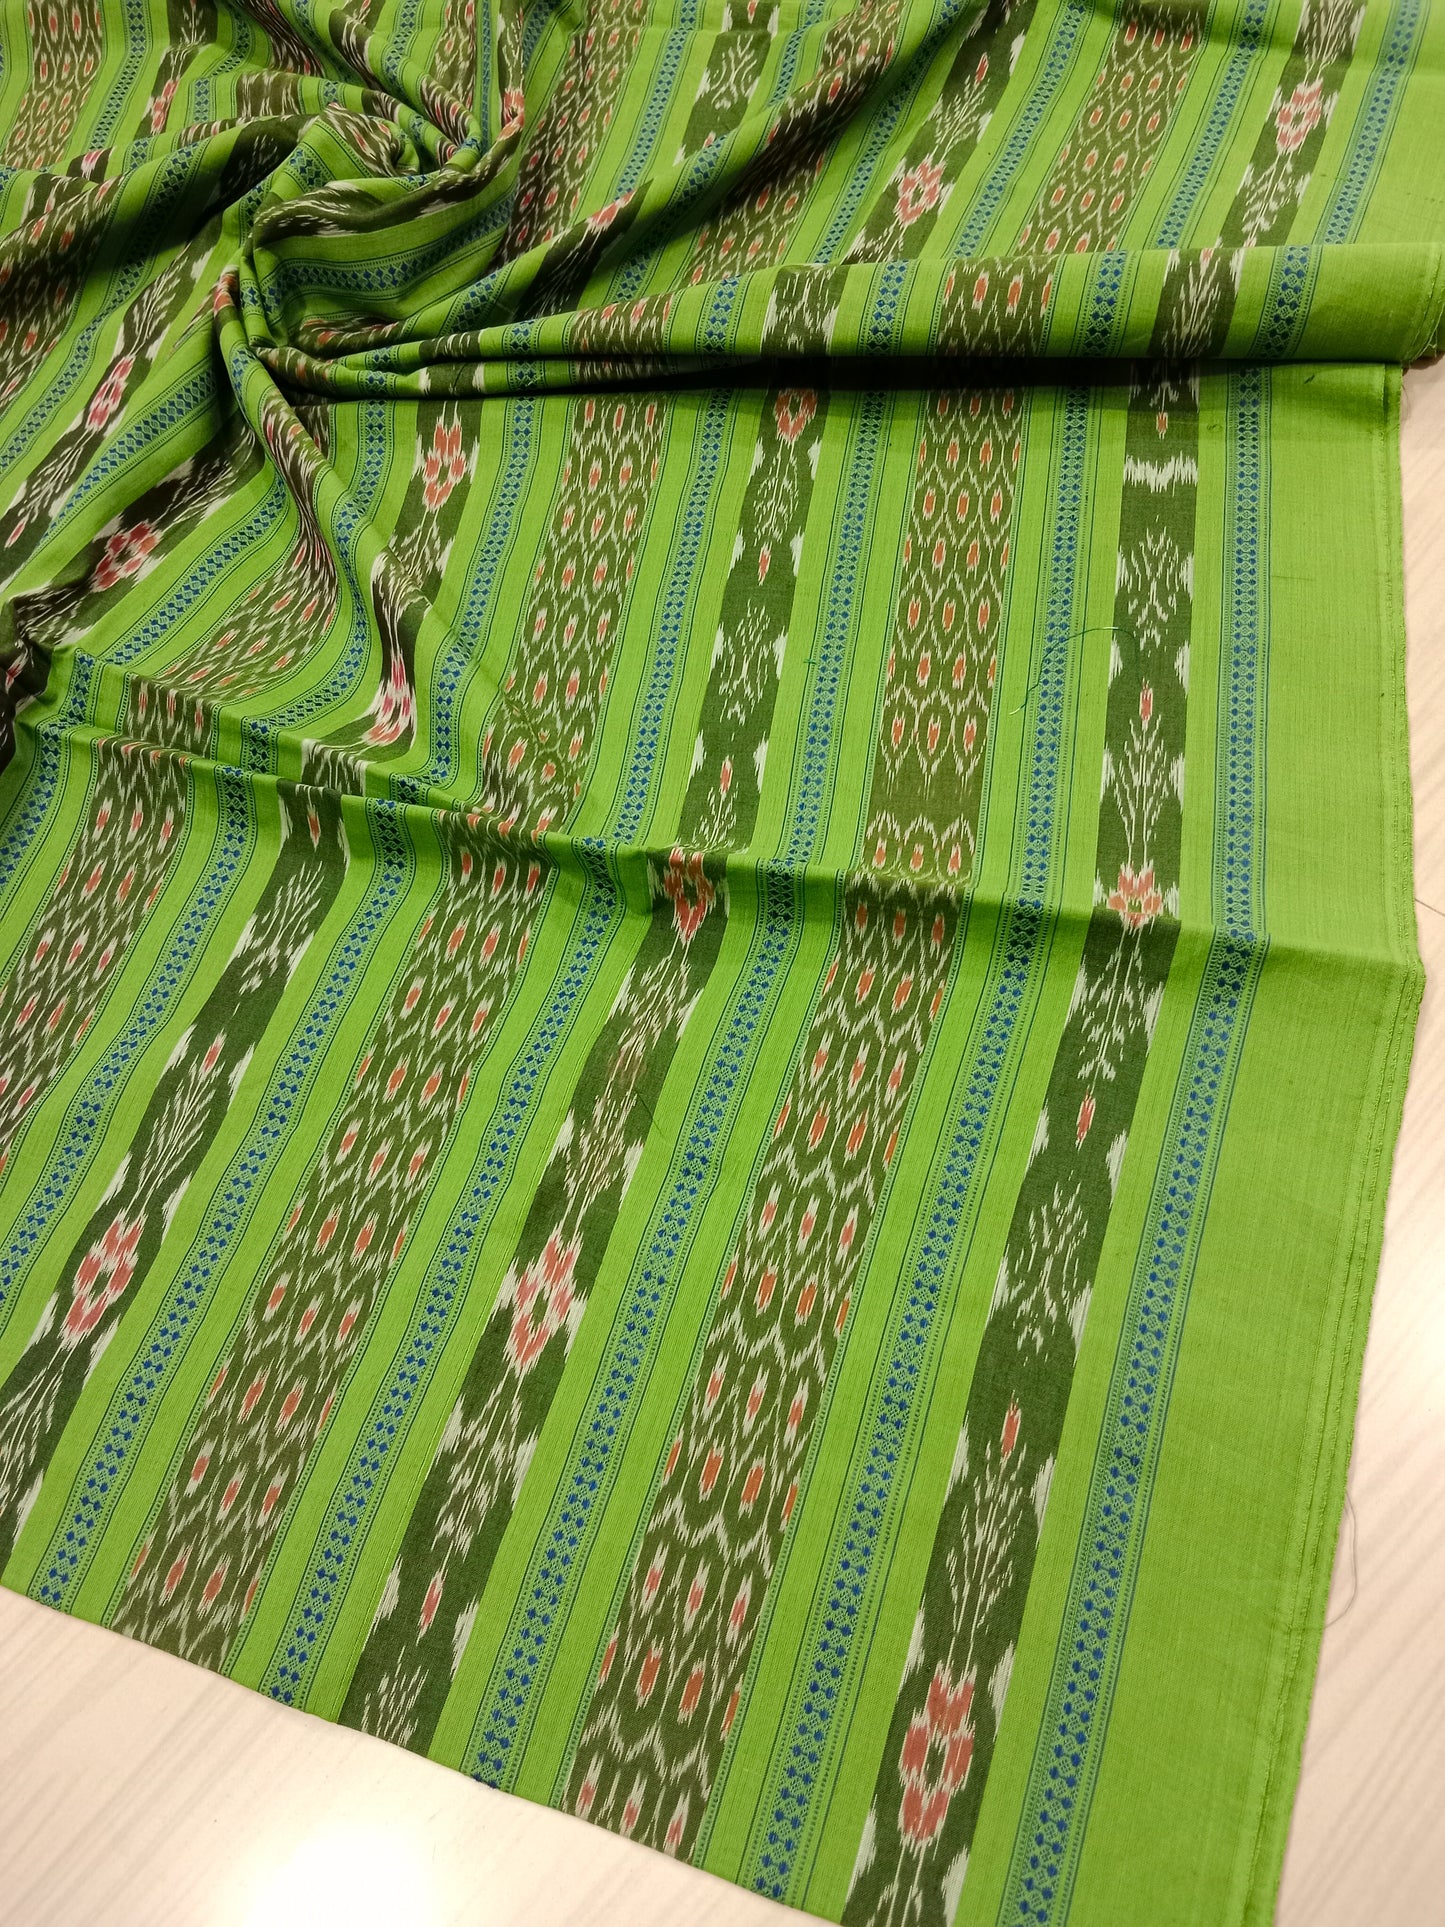 Green tree ikat fabric